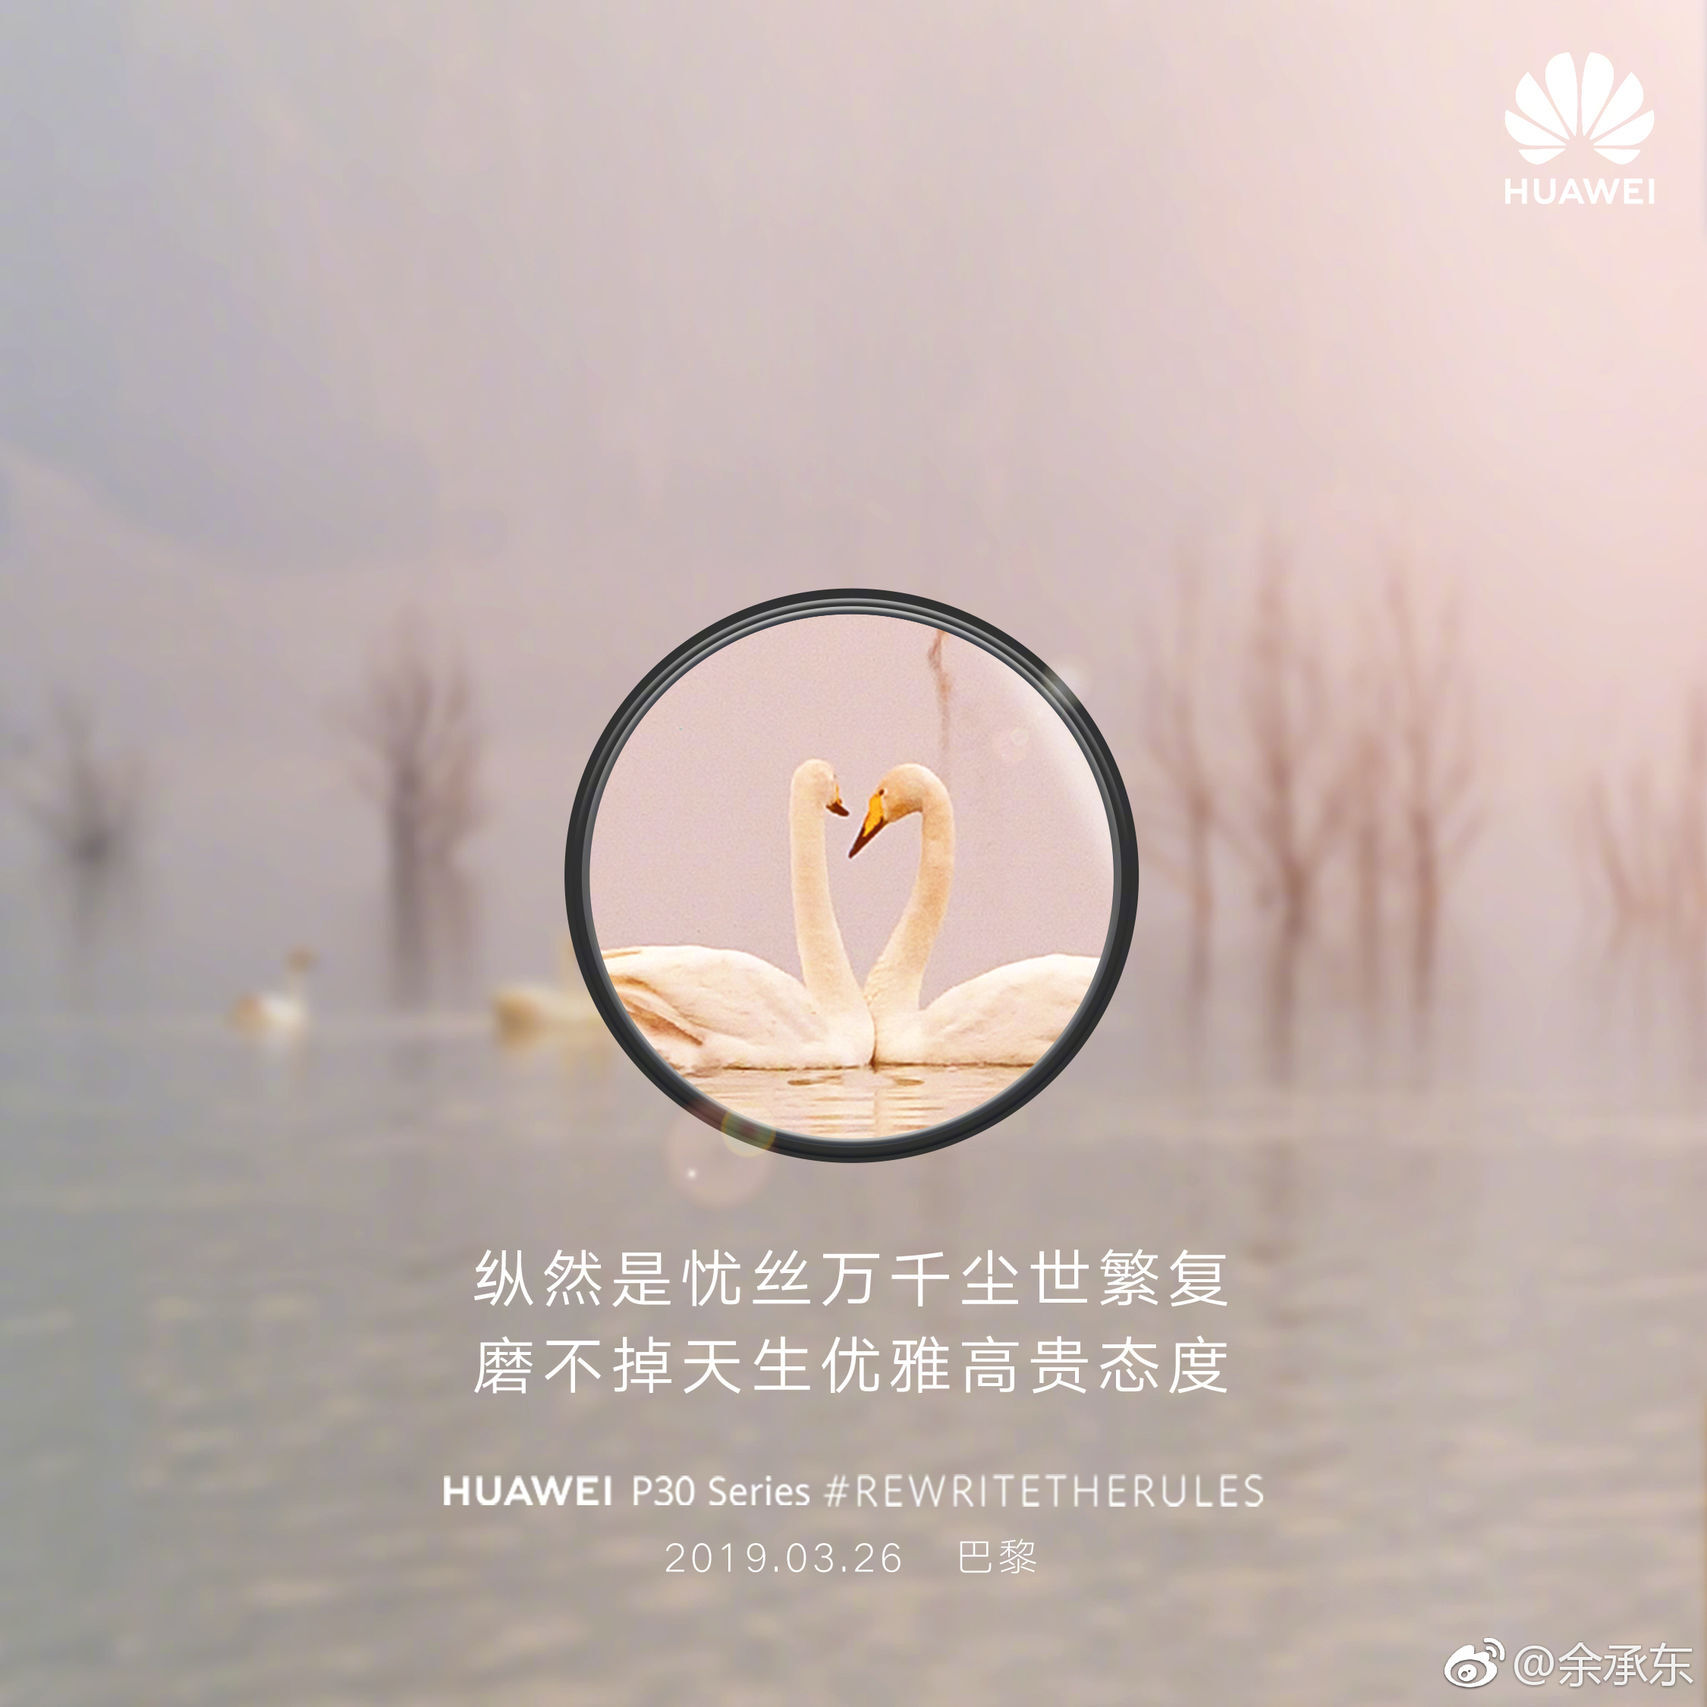 Huawei P30 RewriteTheRules